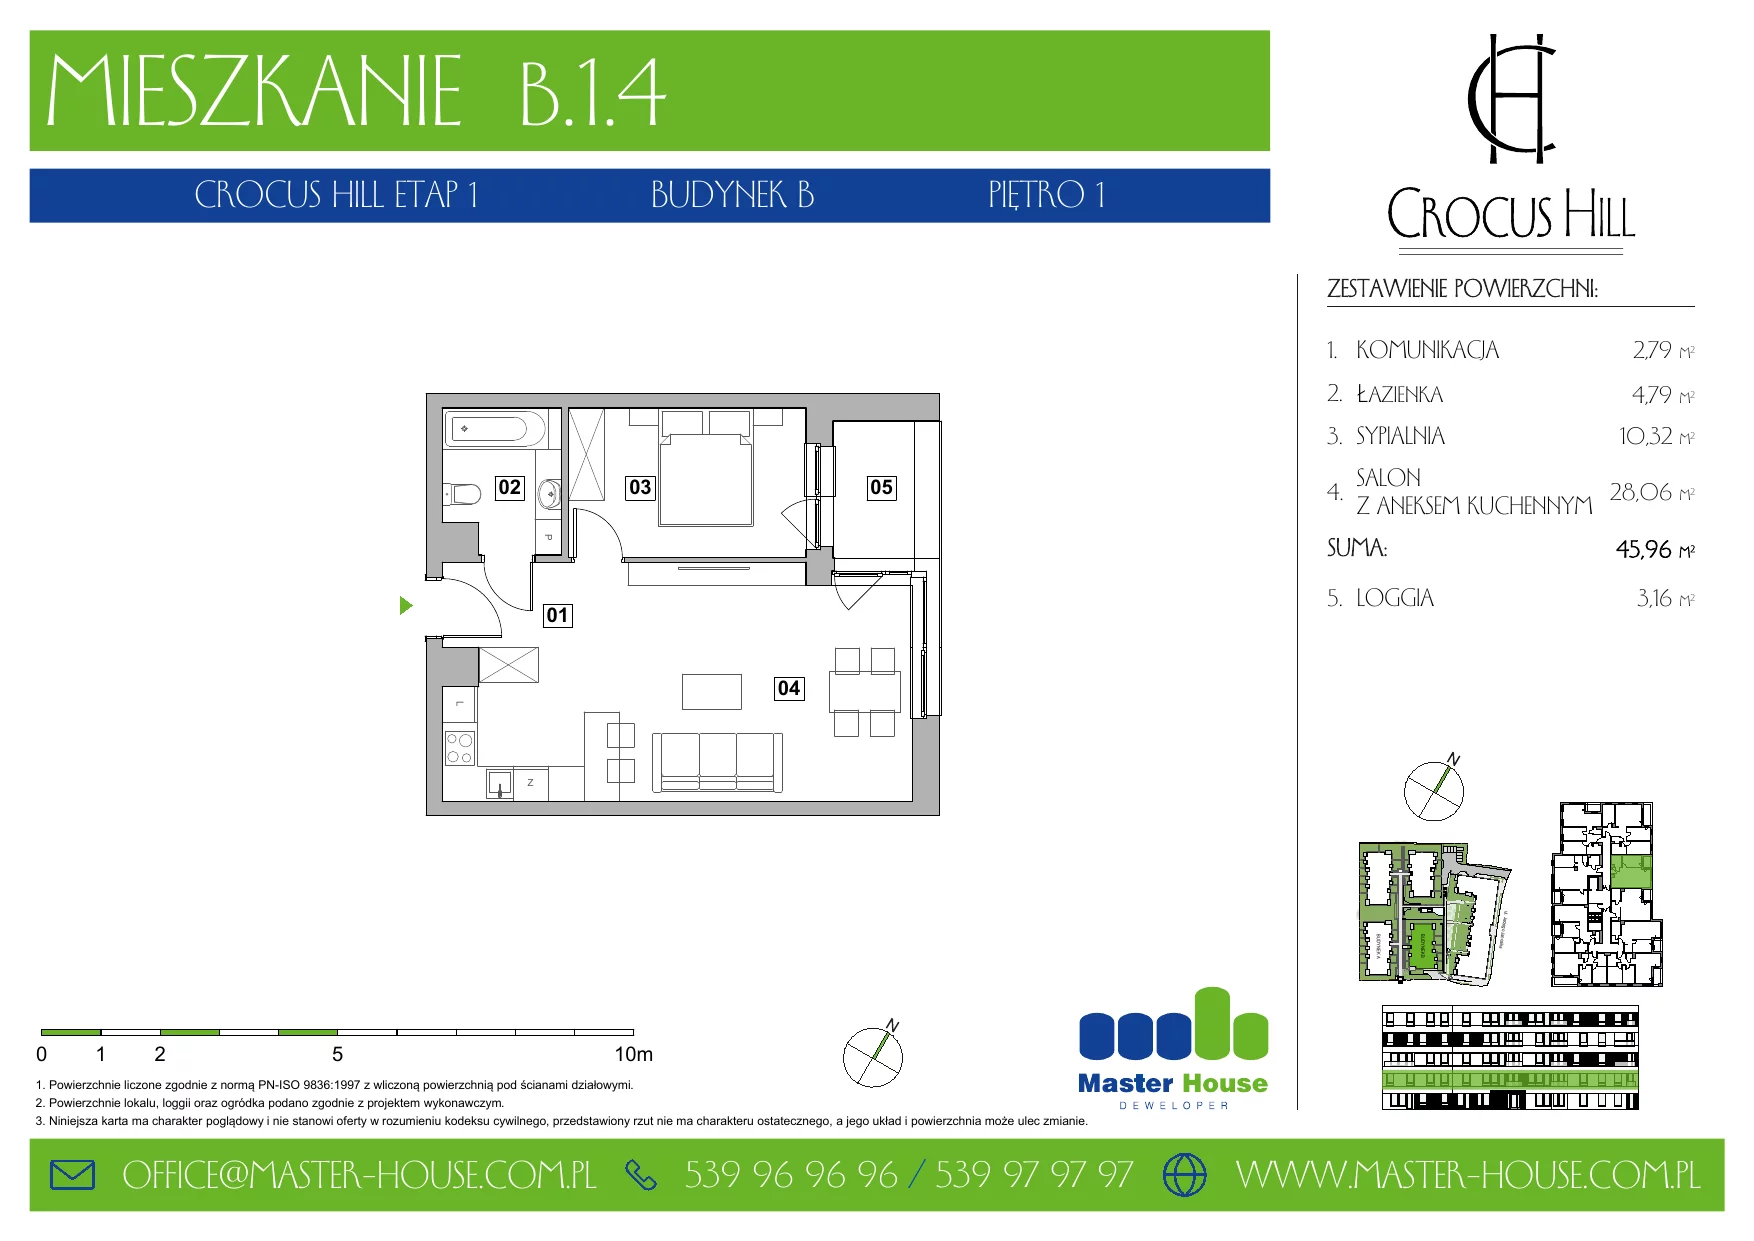 Mieszkanie 45,96 m², piętro 1, oferta nr B.1.4, Crocus Hill, Szczecin, Śródmieście, ul. Jerzego Janosika 2, 2A, 3, 3A